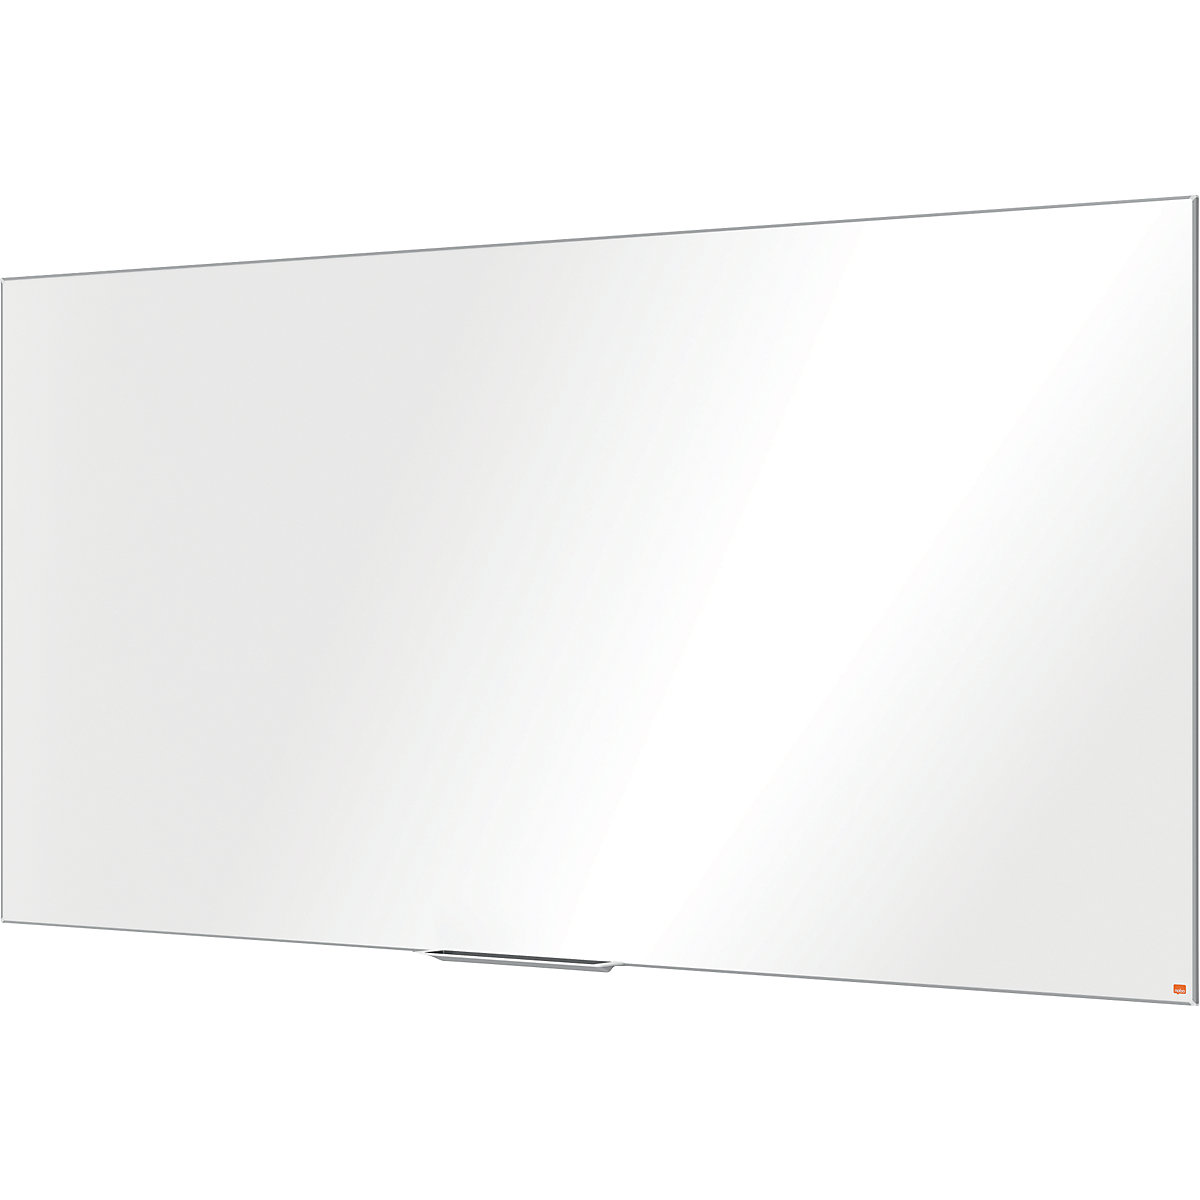 PRO whiteboard – nobo, steel, enamelled, WxH 2400 x 1200 mm-5